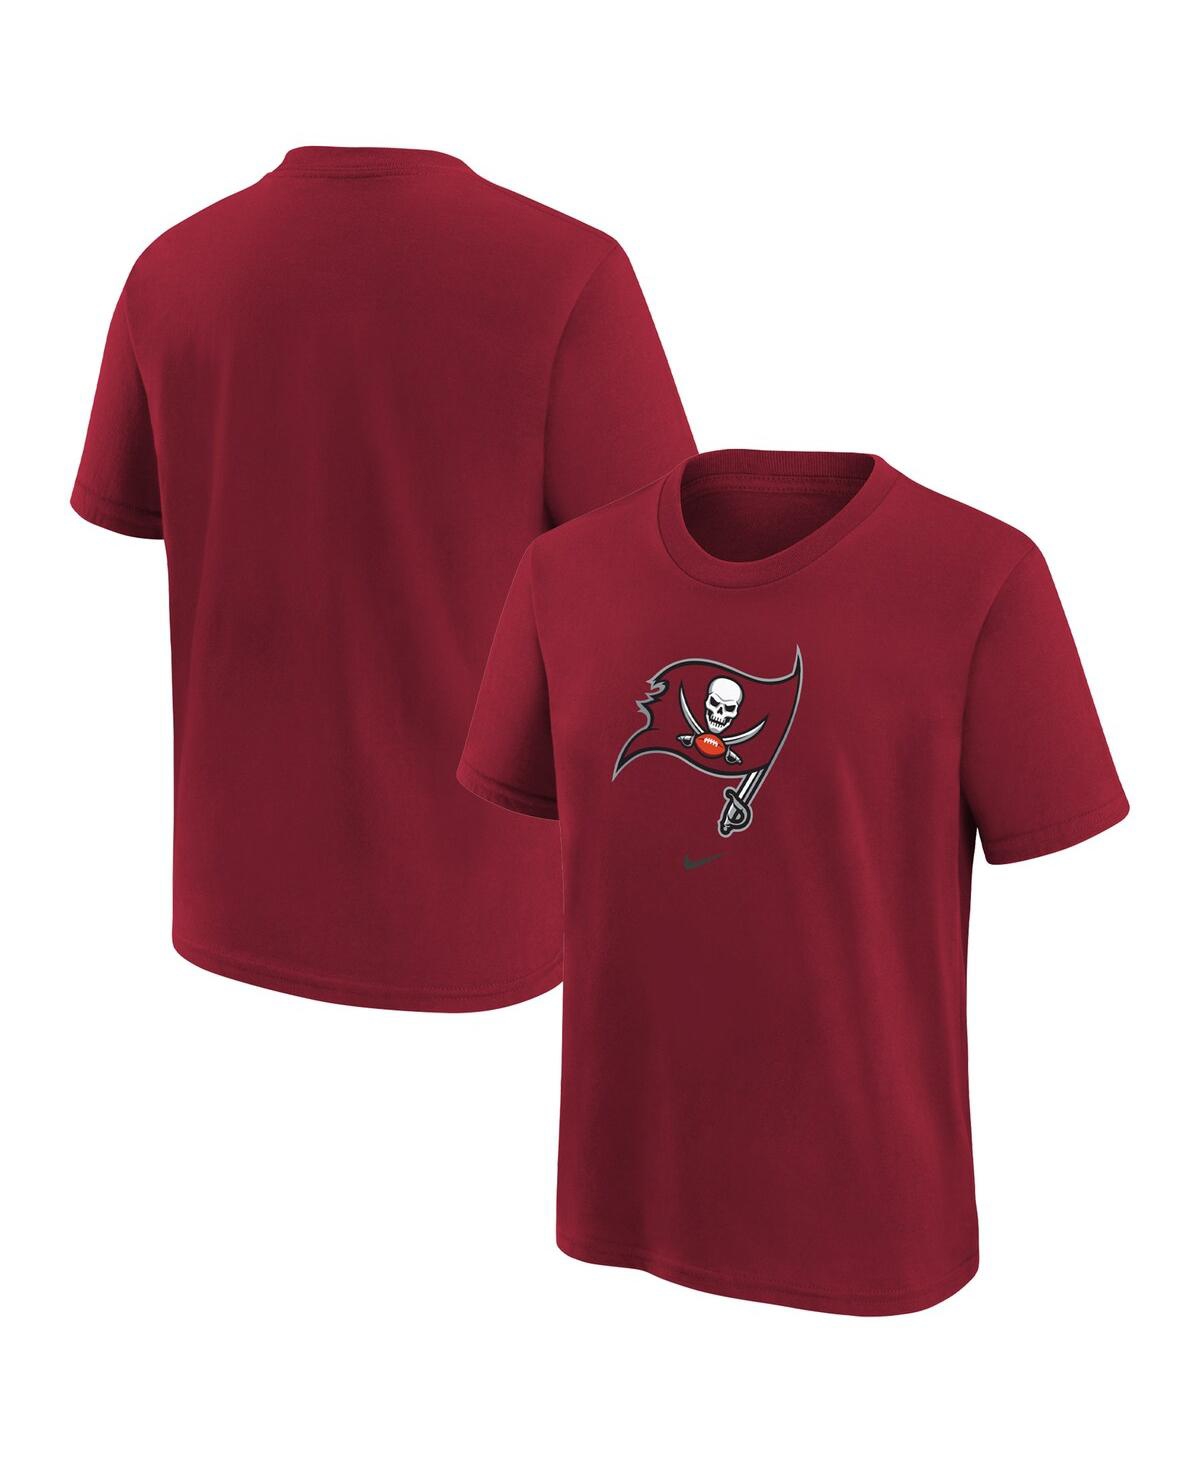 Nike Babies' Preschool Boys And Girls  Red Tampa Bay Buccaneers Team Wordmark T-shirt